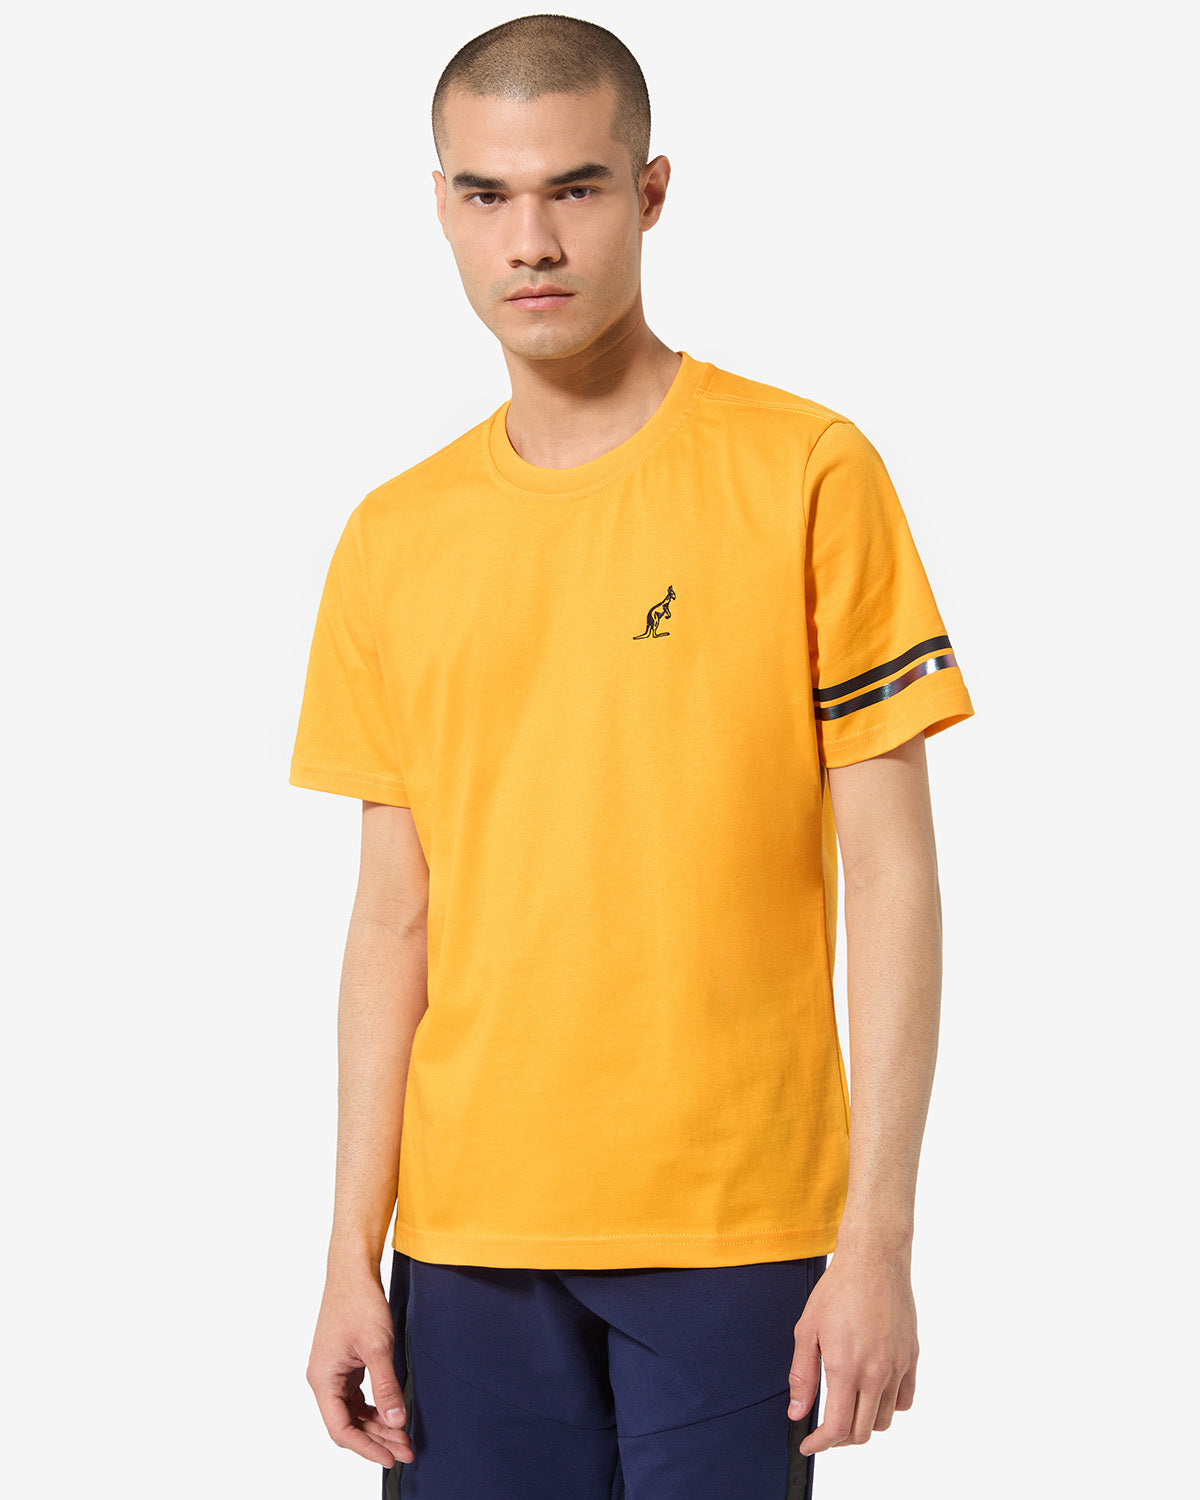 Club T-Shirts: Australian Sportswear